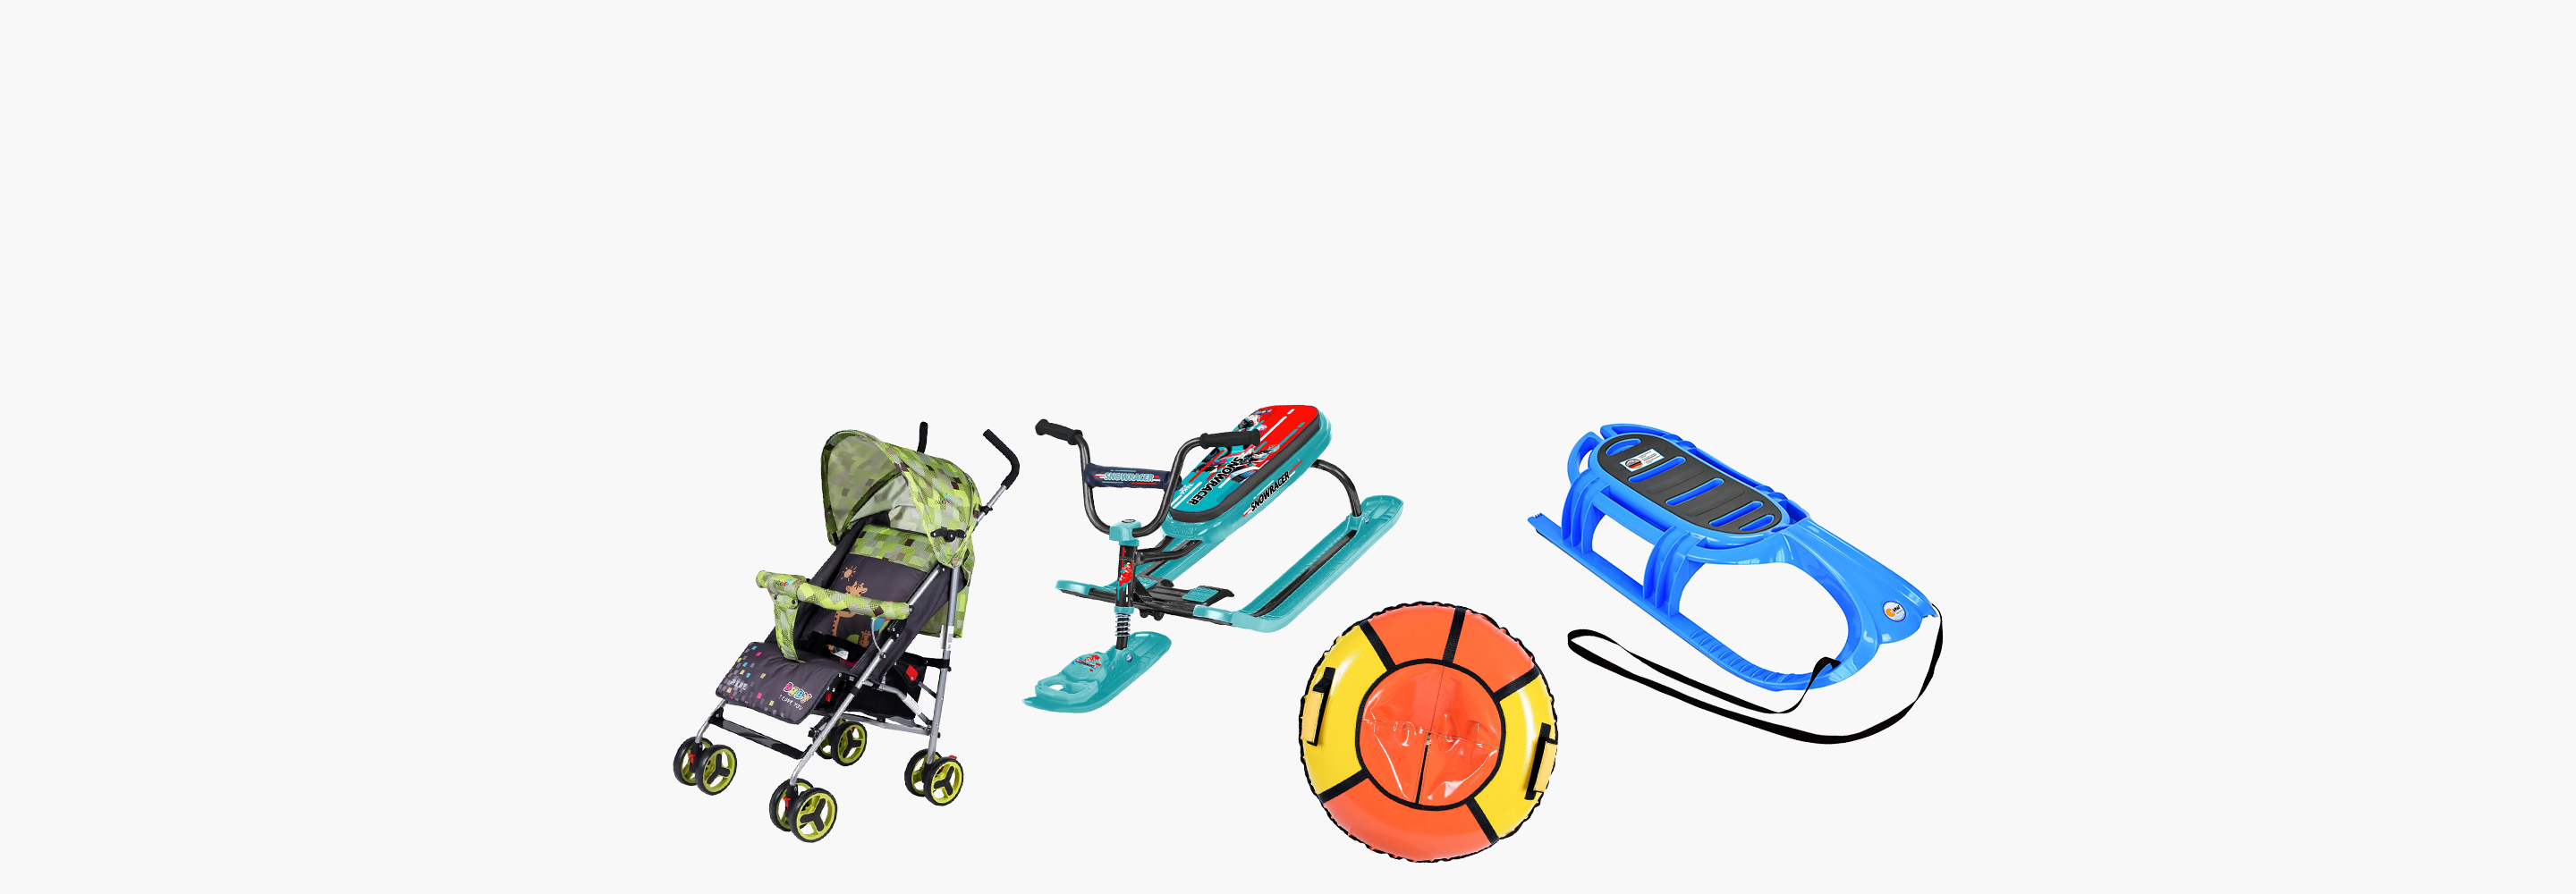 Самокат на лыжах и санимобиль: 6 видов детского транспорта для снежных зим